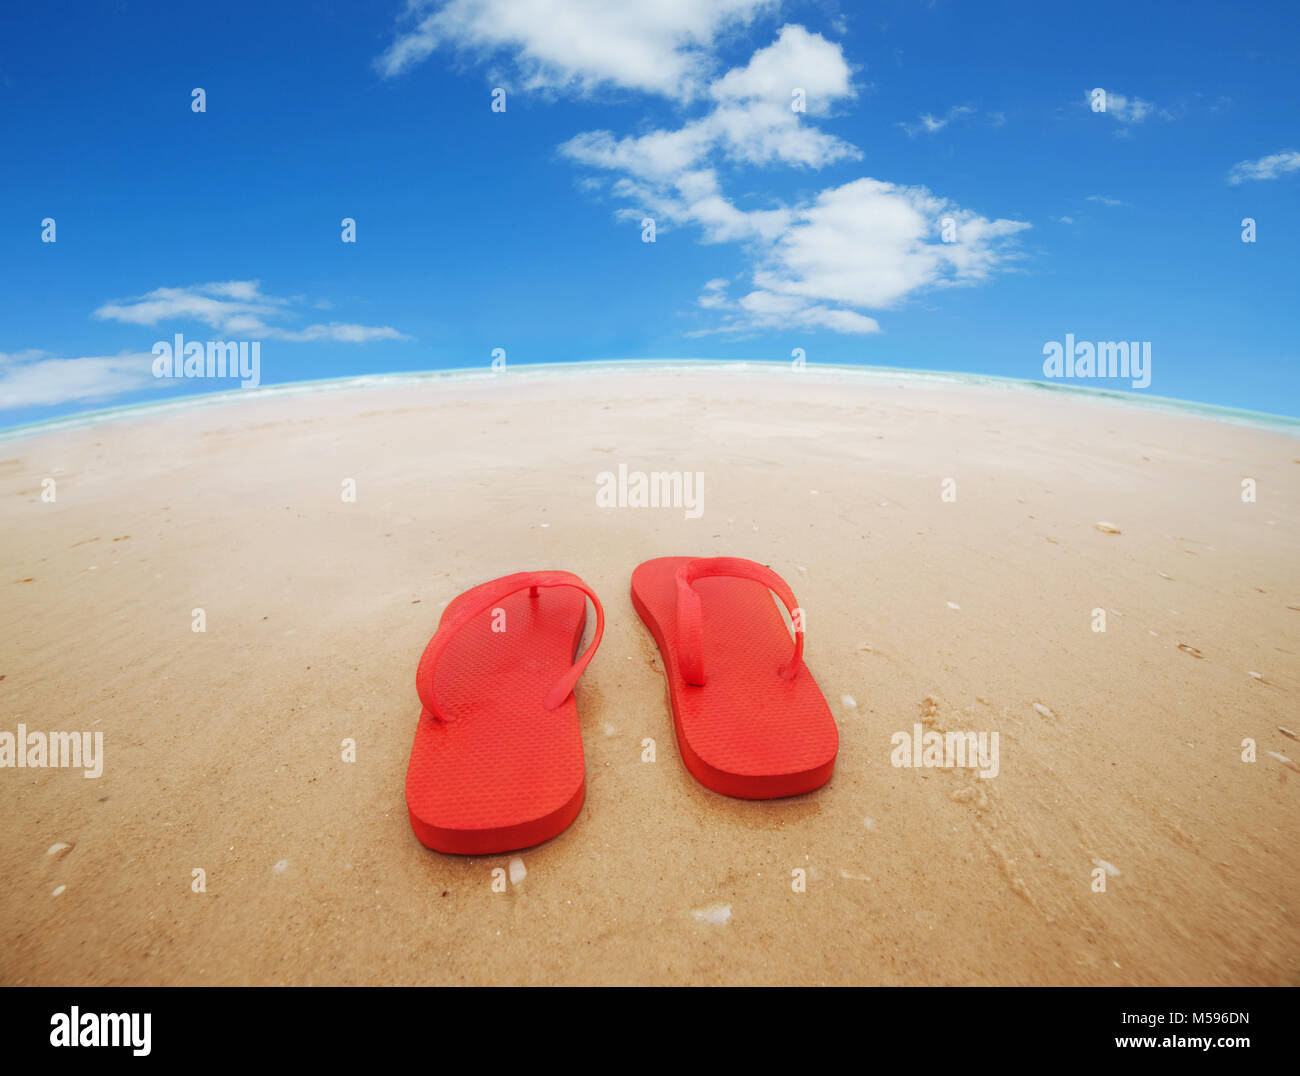 Tongs rouges sur la plage.Concept de vacances estivales.wide angle Banque D'Images